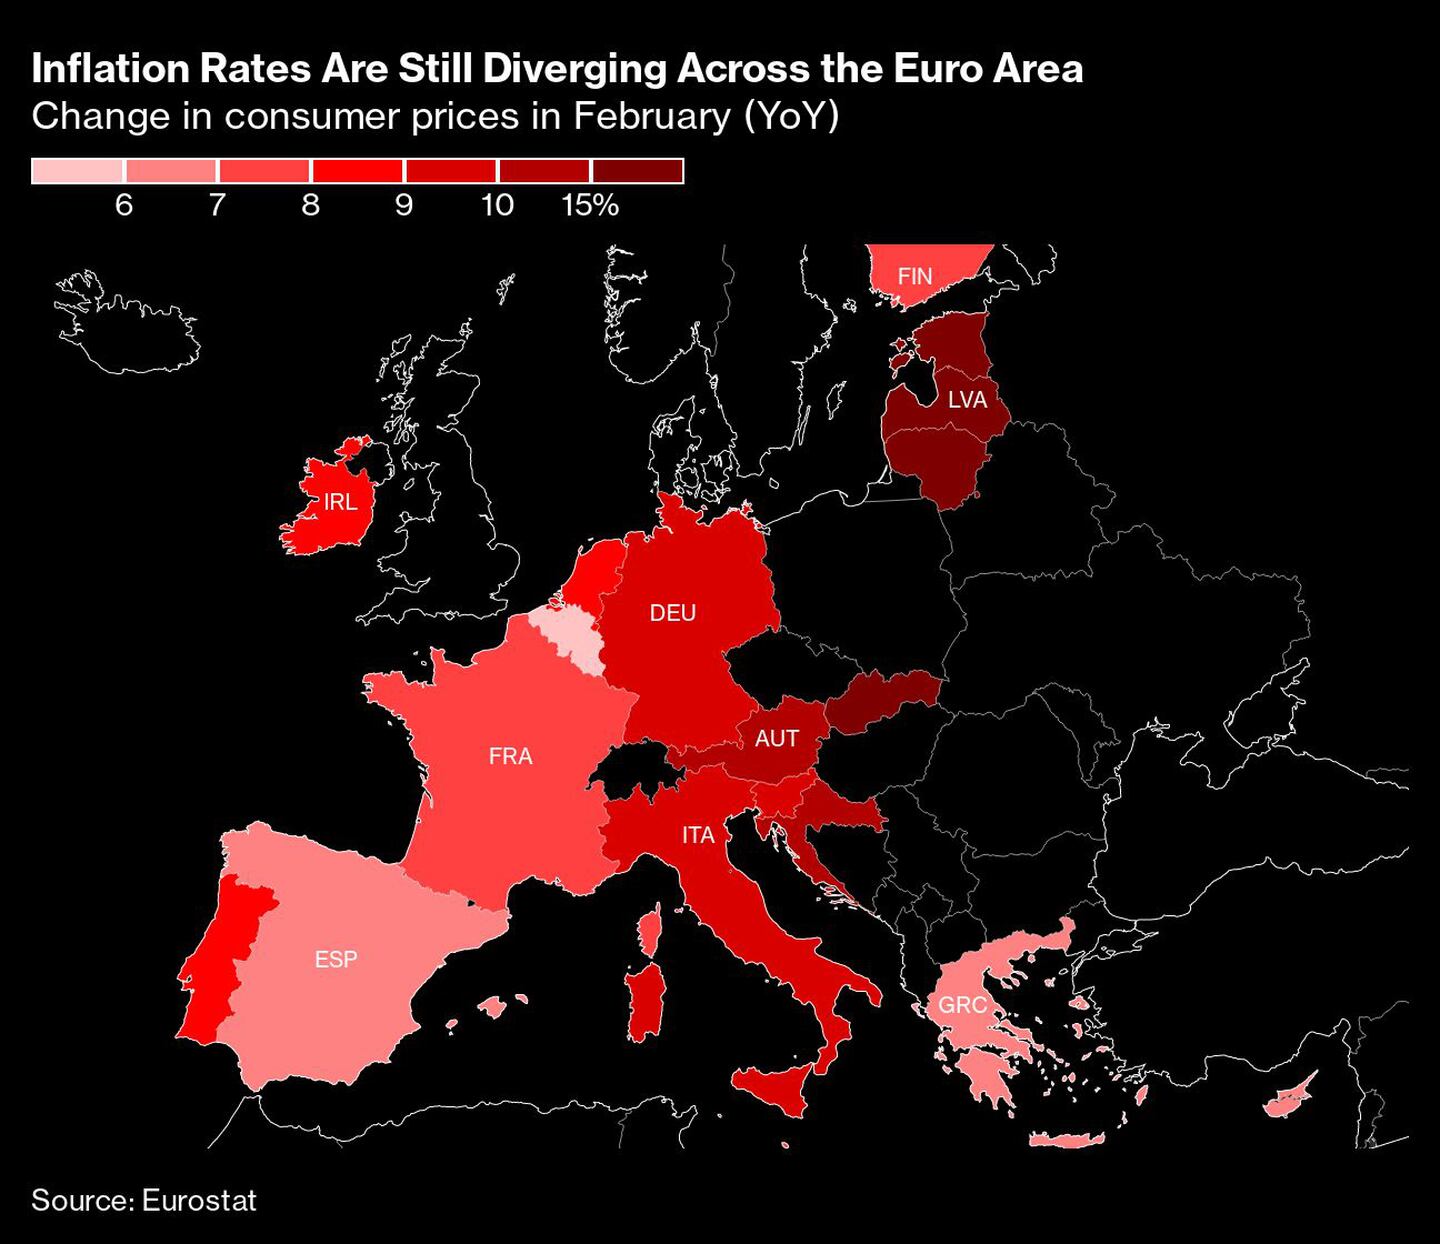 Tasas de inflación siguen siendo distintas en Europadfd